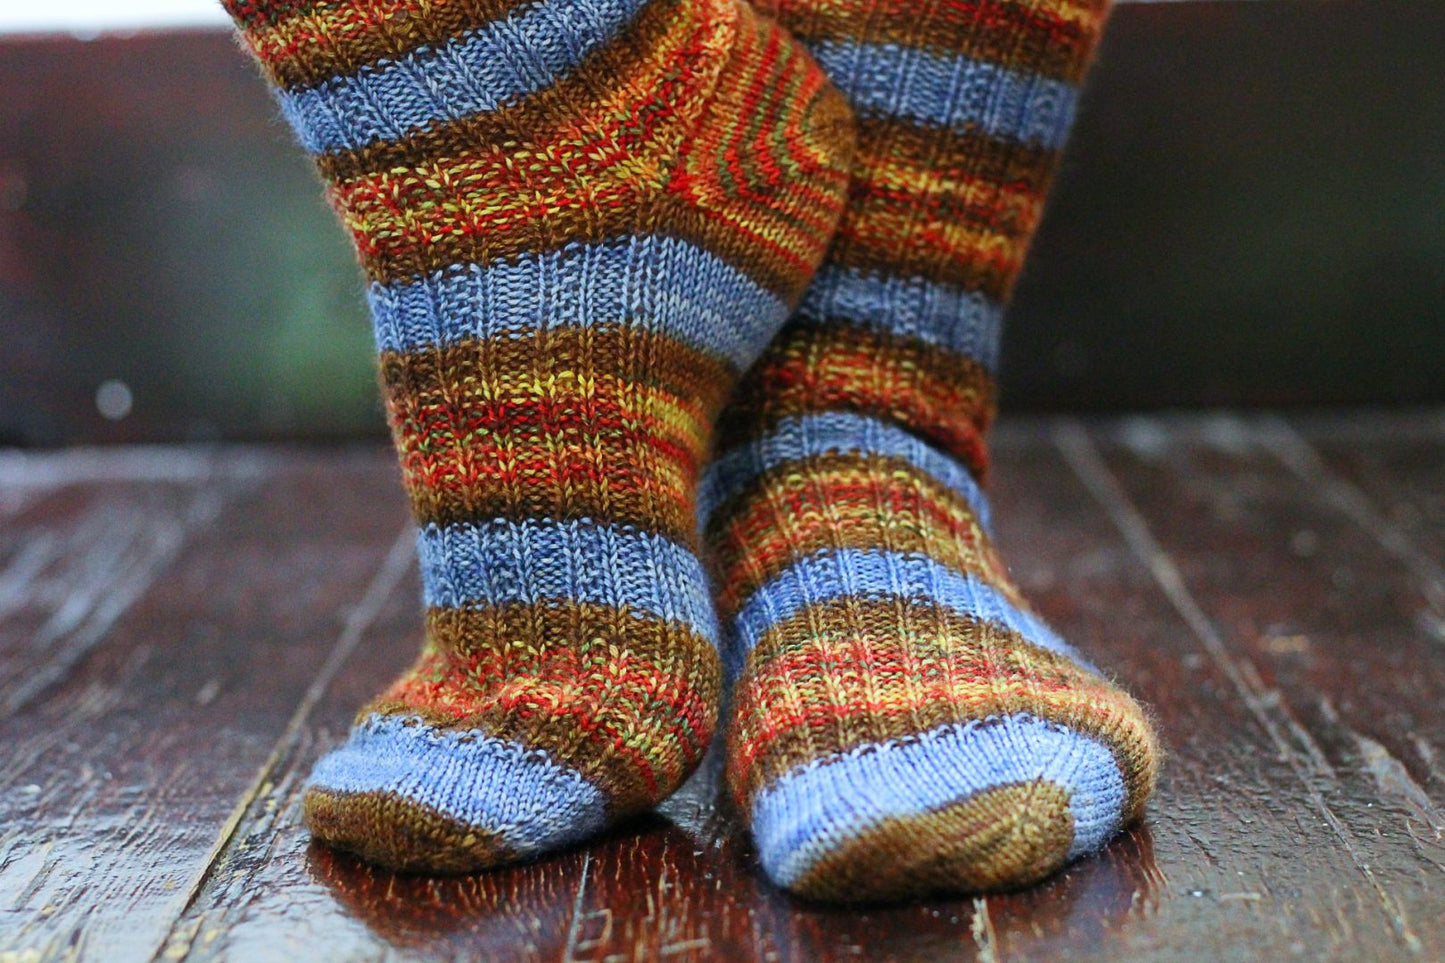  self-striping sock yarn being worn on wooden floor